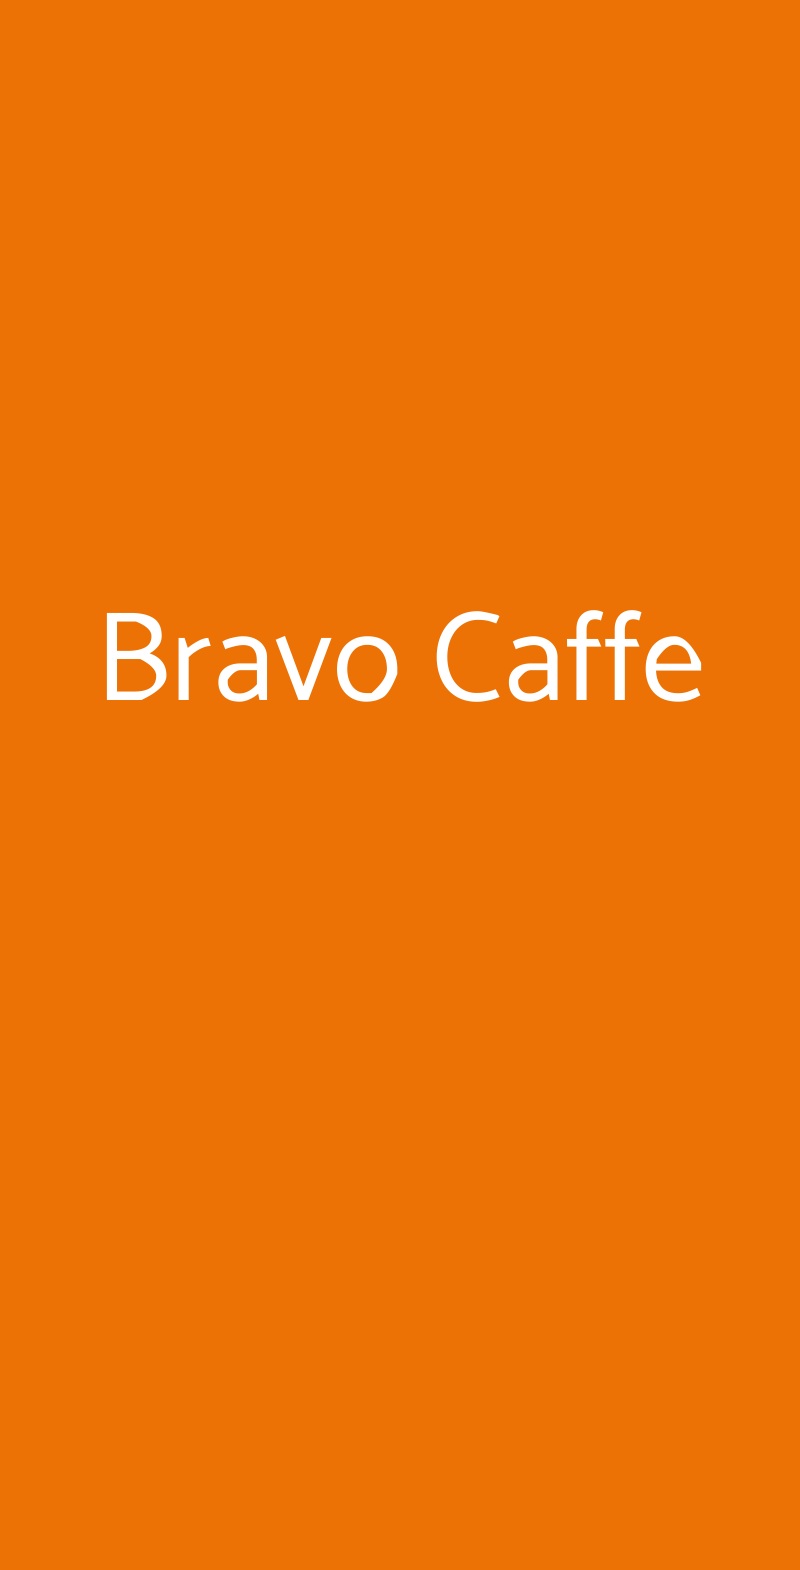 Bravo Caffe Bologna menù 1 pagina